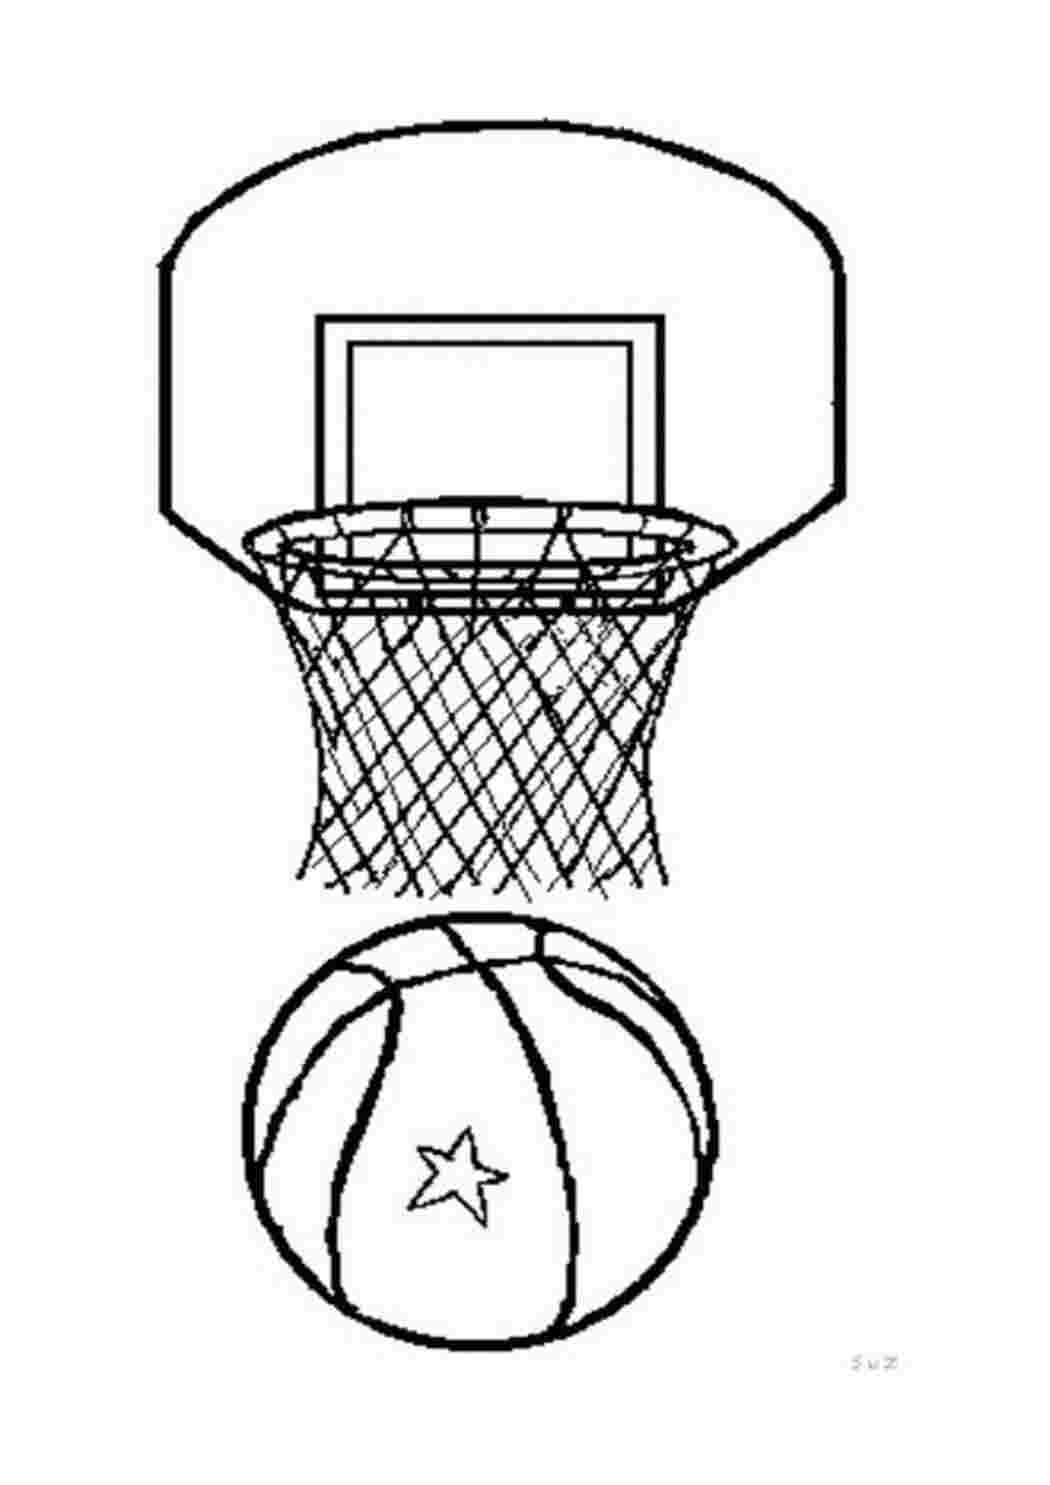 Раскраски картинки на рабочий стол онлайн Баскетбольный щит и мяч Раскраски для мальчиков